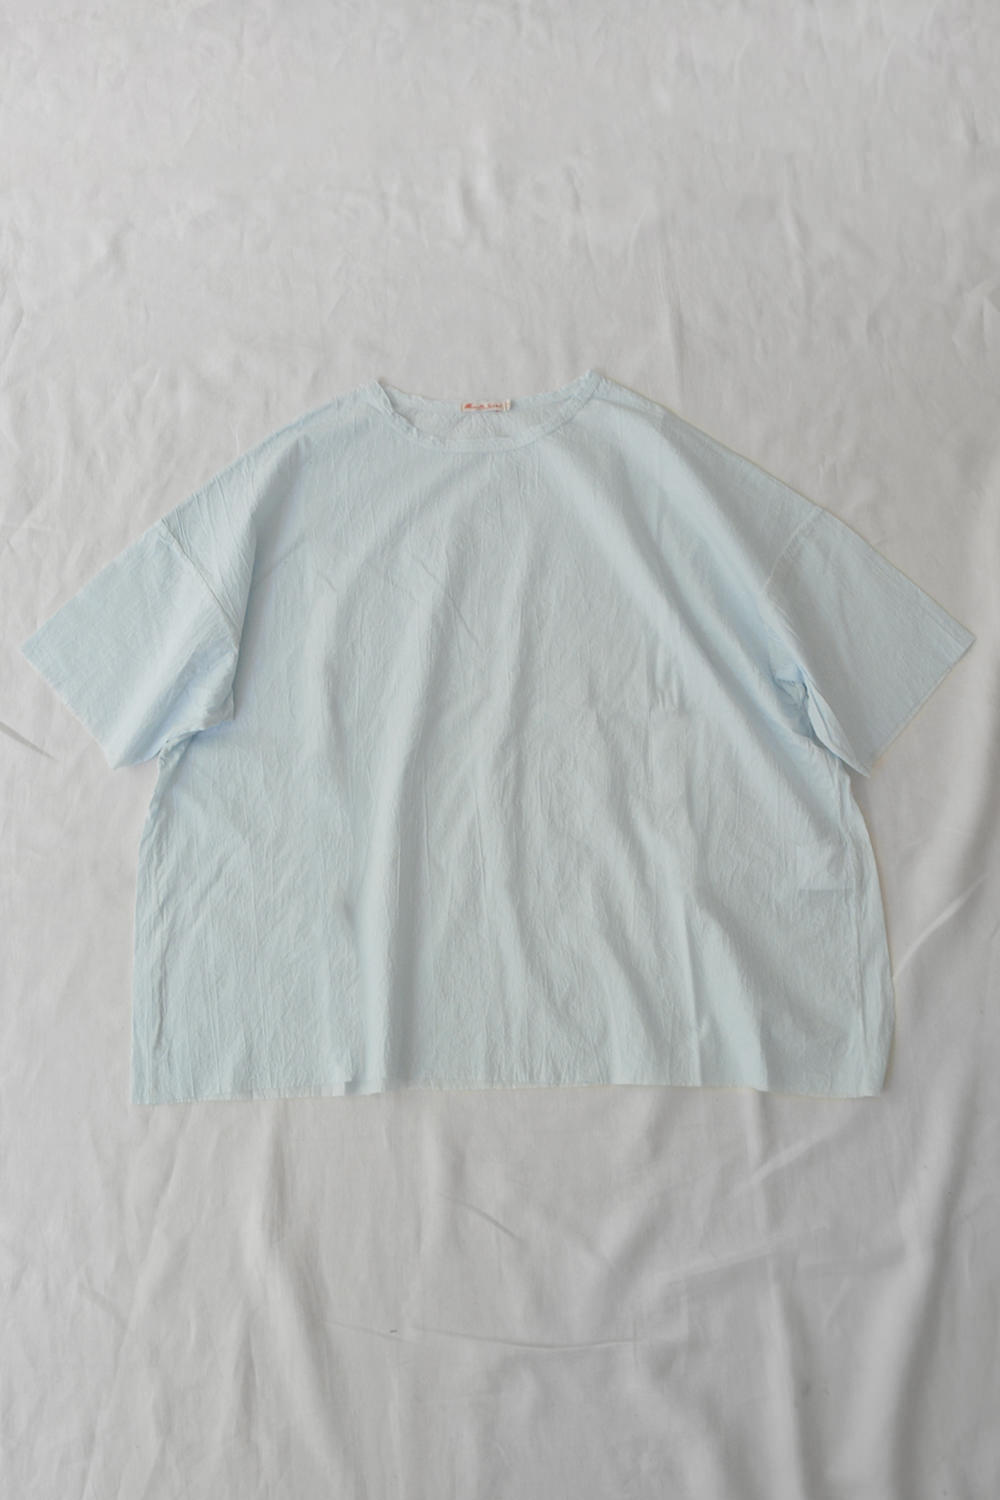 Manuelle Guibal Oversize Cotton T-shirt Aqua Blue Top Picture